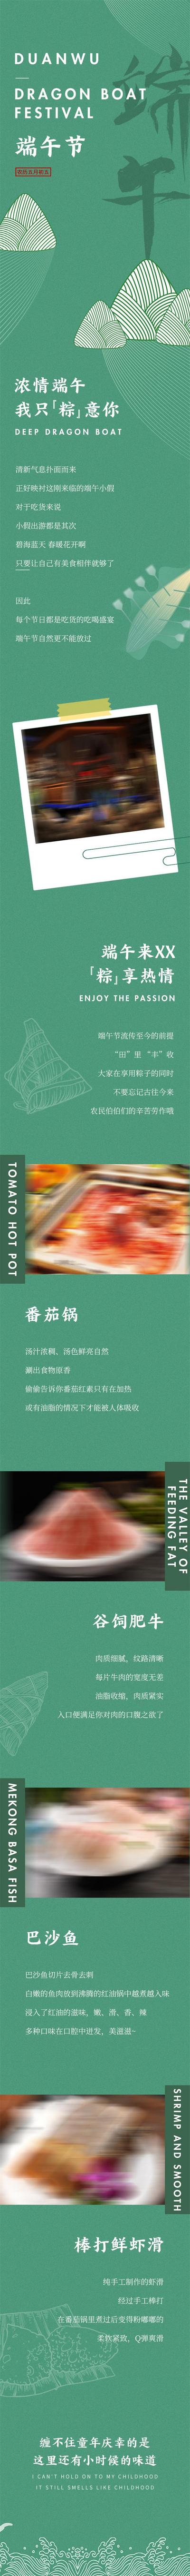 南门网 广告 长图 美食 端午 专题设计 中国传统节日 端午节 餐饮 火锅